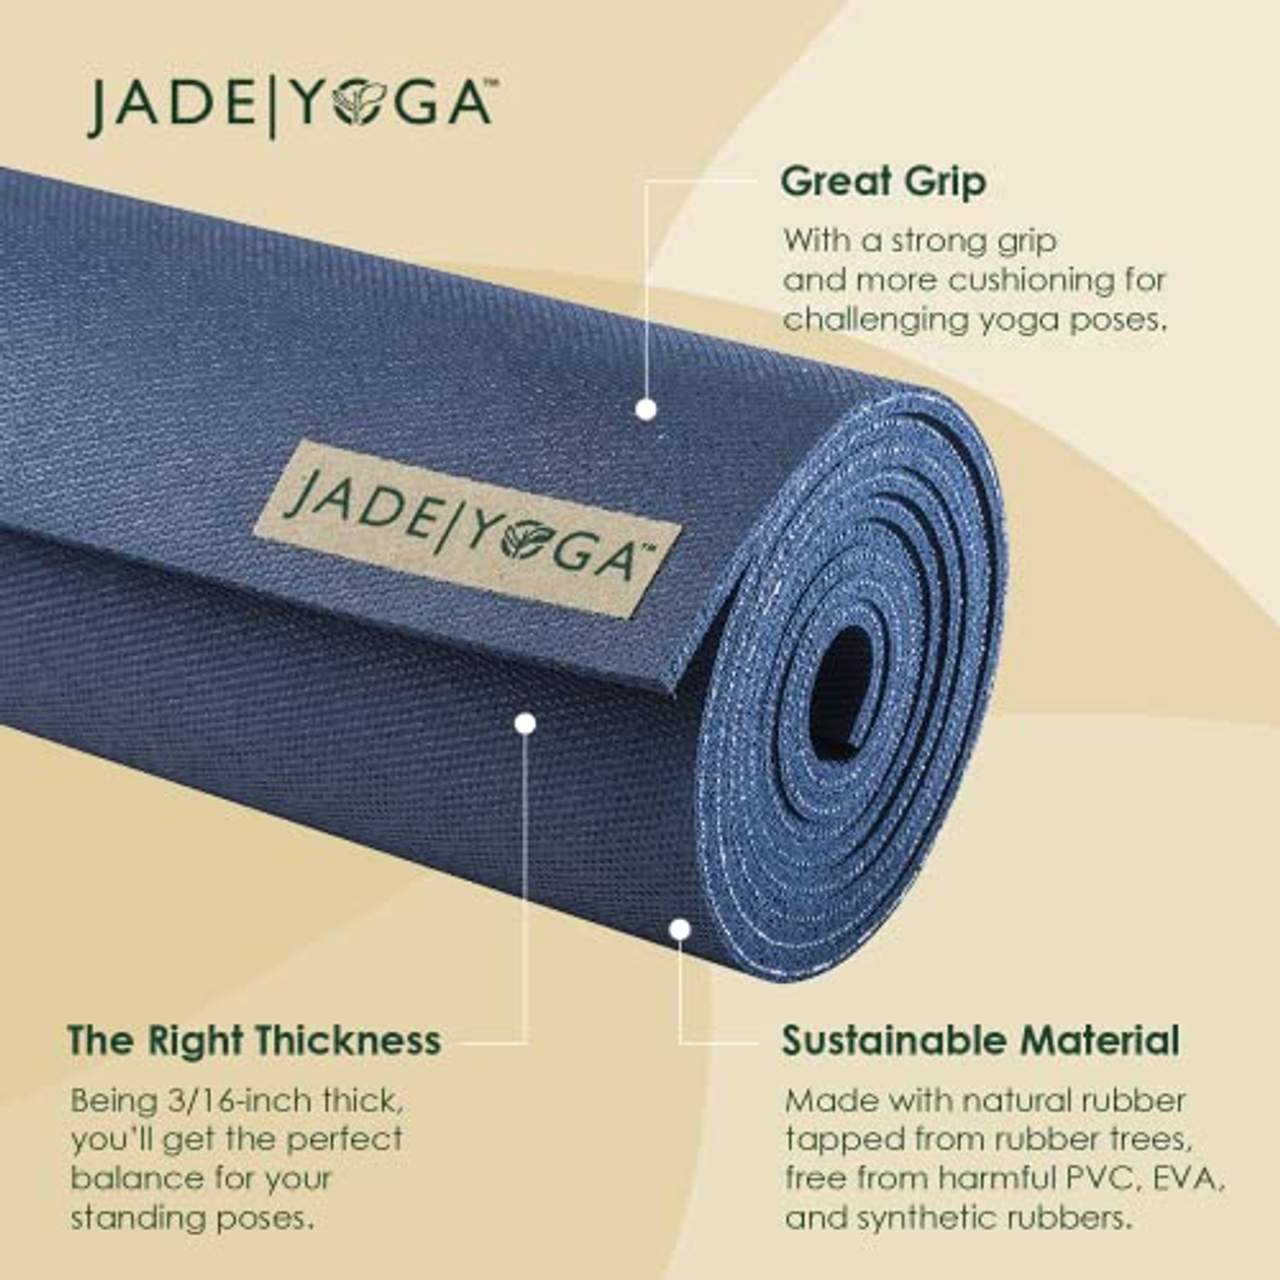 Jade Harmony Yogamatte lang